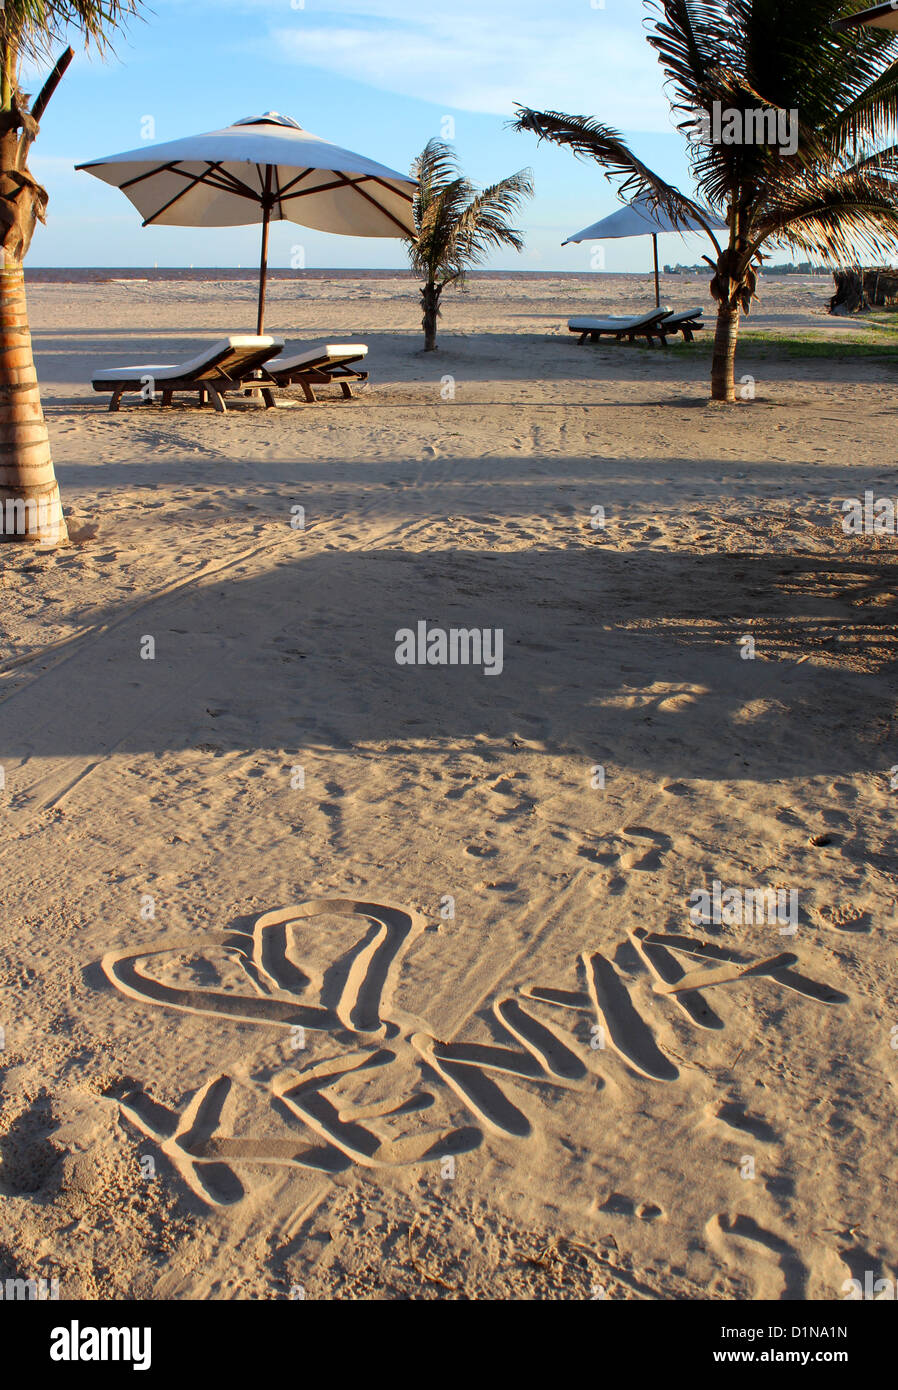 Kenya written in the sand on a beach, Malindi, Kenya, East Africa Stock Photo